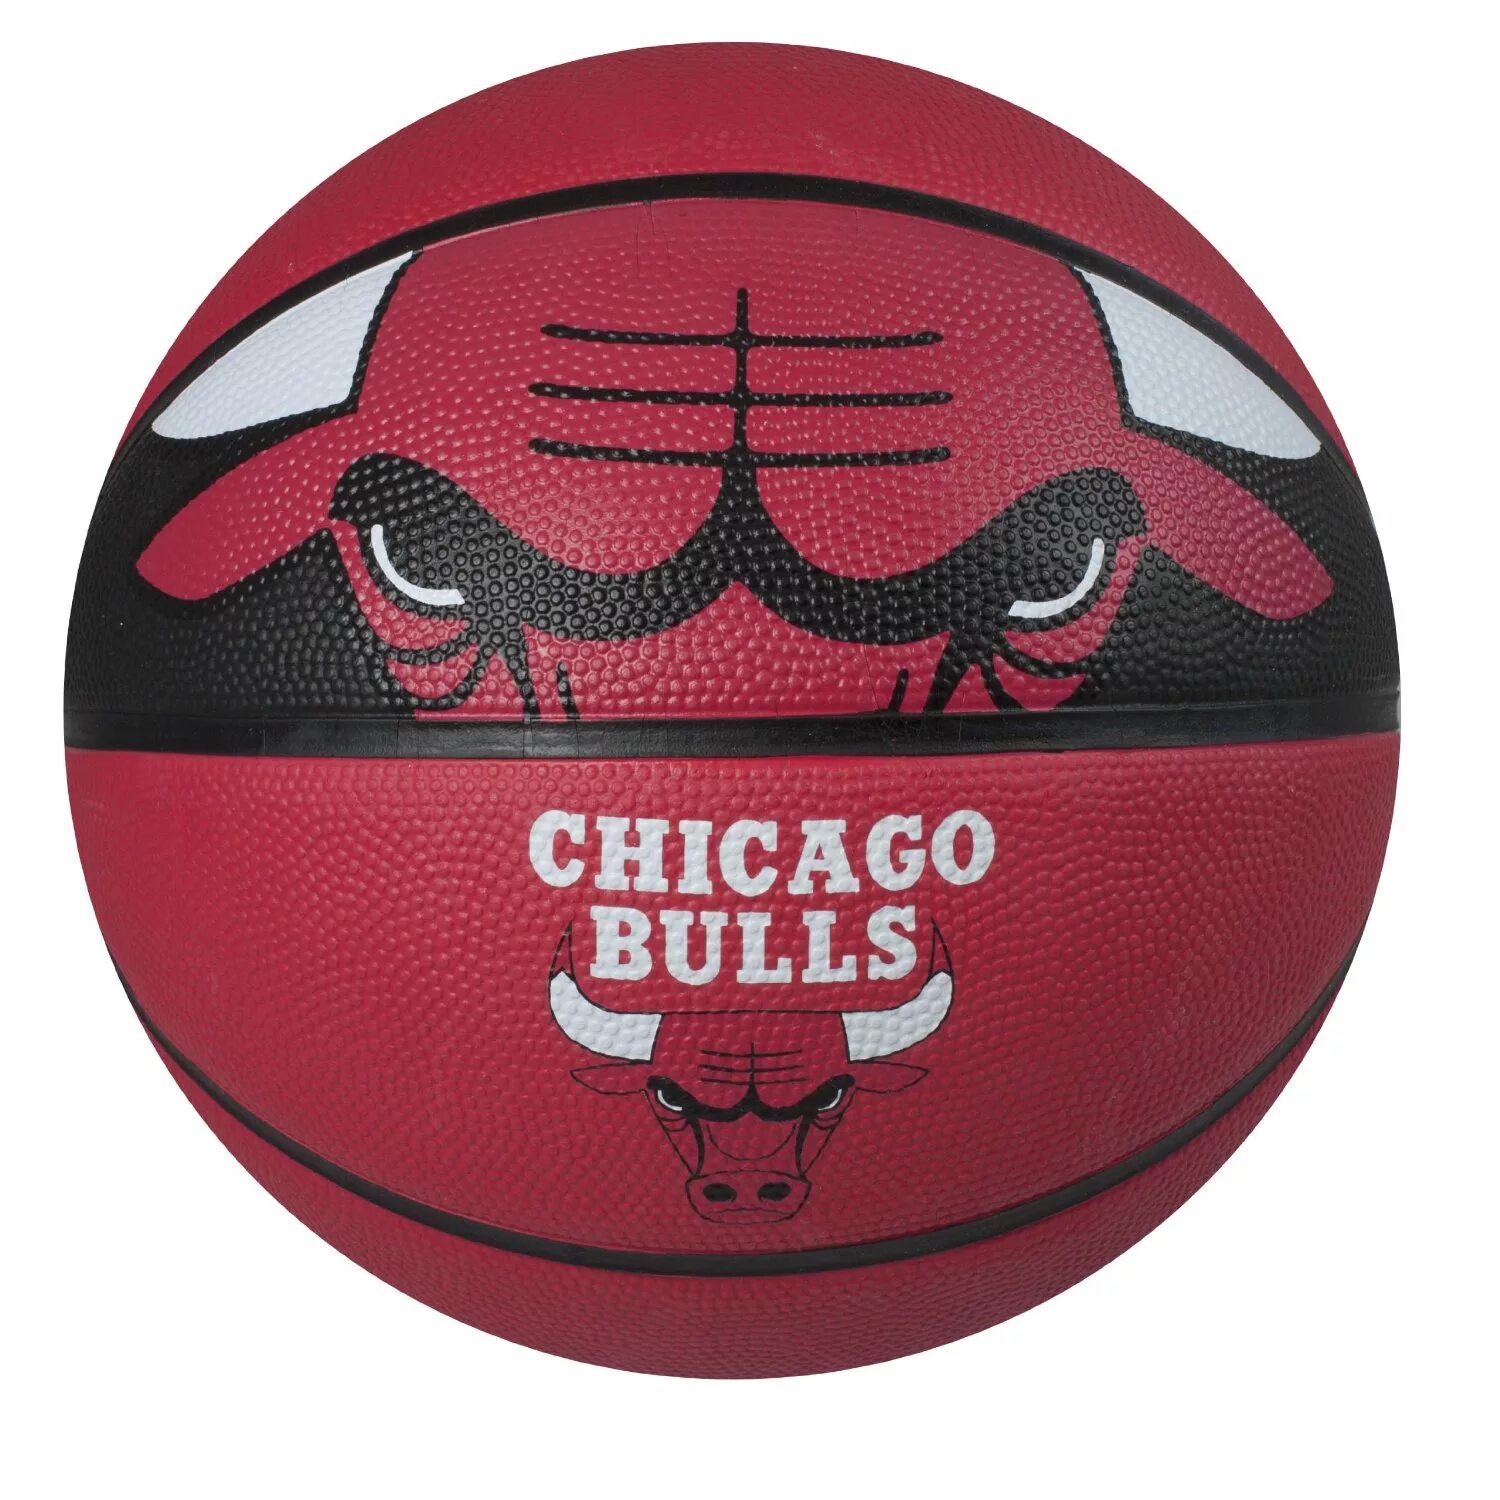 Спортивные магазины баскетбольные мячи. Баскетбольный мяч Spalding Chicago bulls. Баскетбольный мяч Nike NBA. Spalding баскетбольный мяч NBA резиновый. Баскетбольный мяч bulls Chicago changobulls NBA.